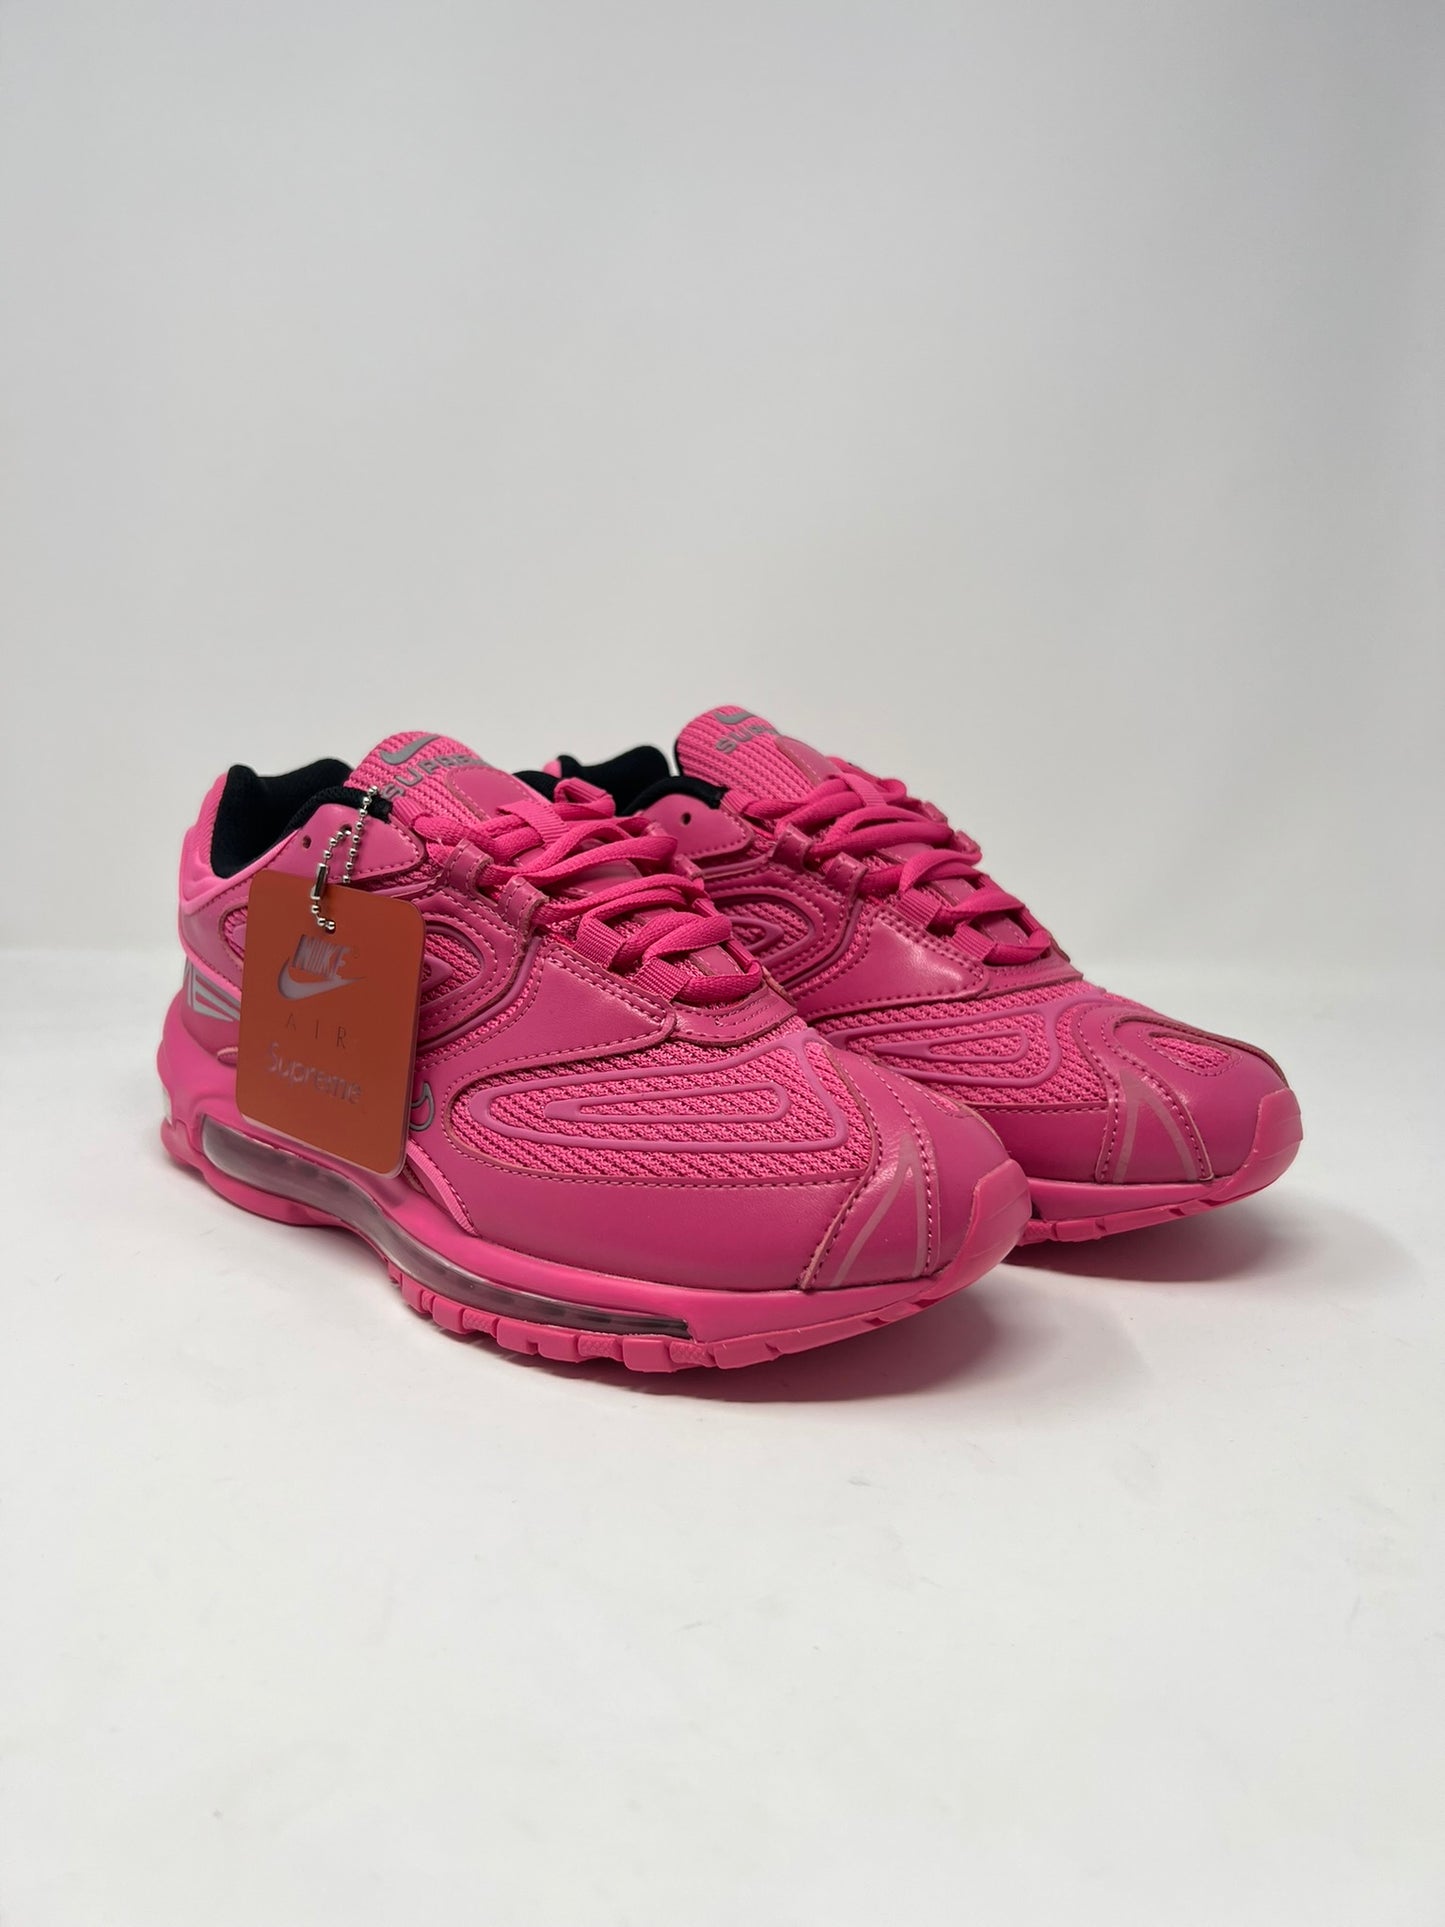 Nike Air Max 98 TL Supreme Pink UK7 DS